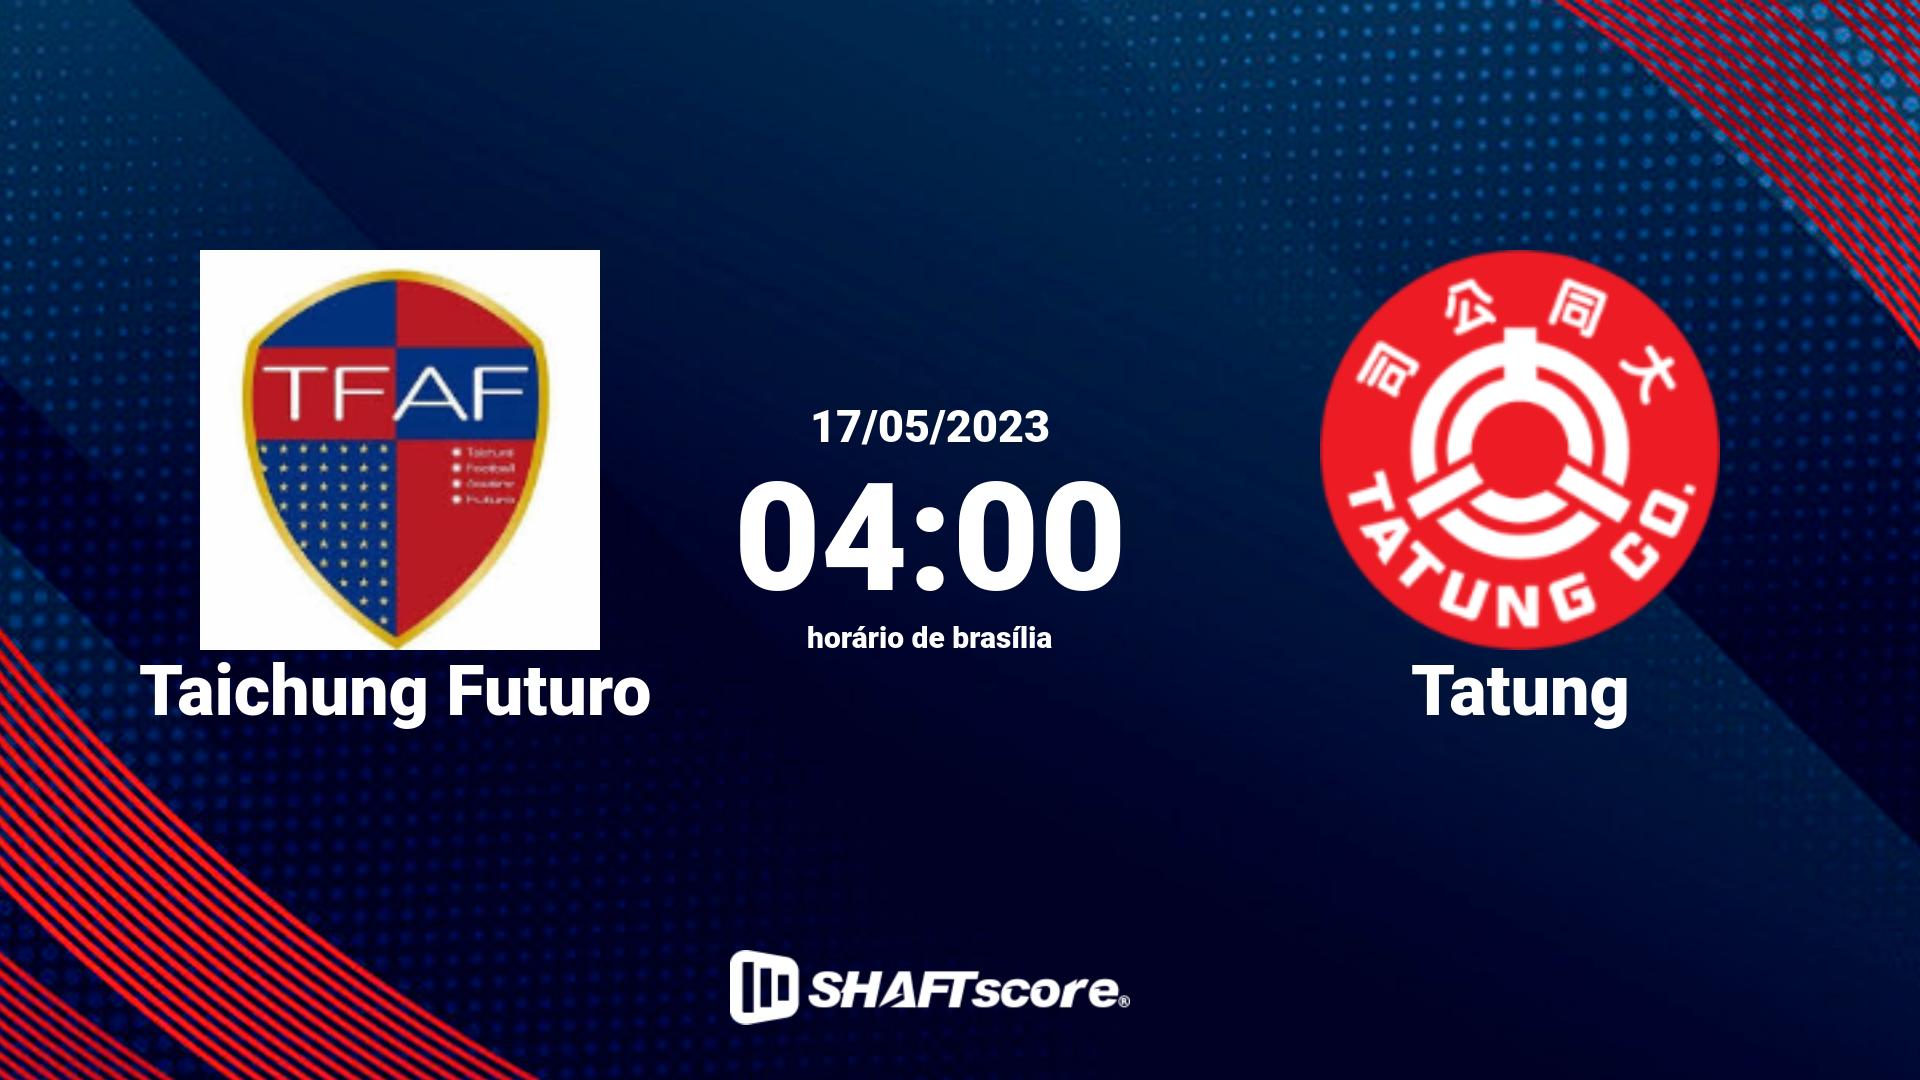 Estatísticas do jogo Taichung Futuro vs Tatung 17.05 04:00